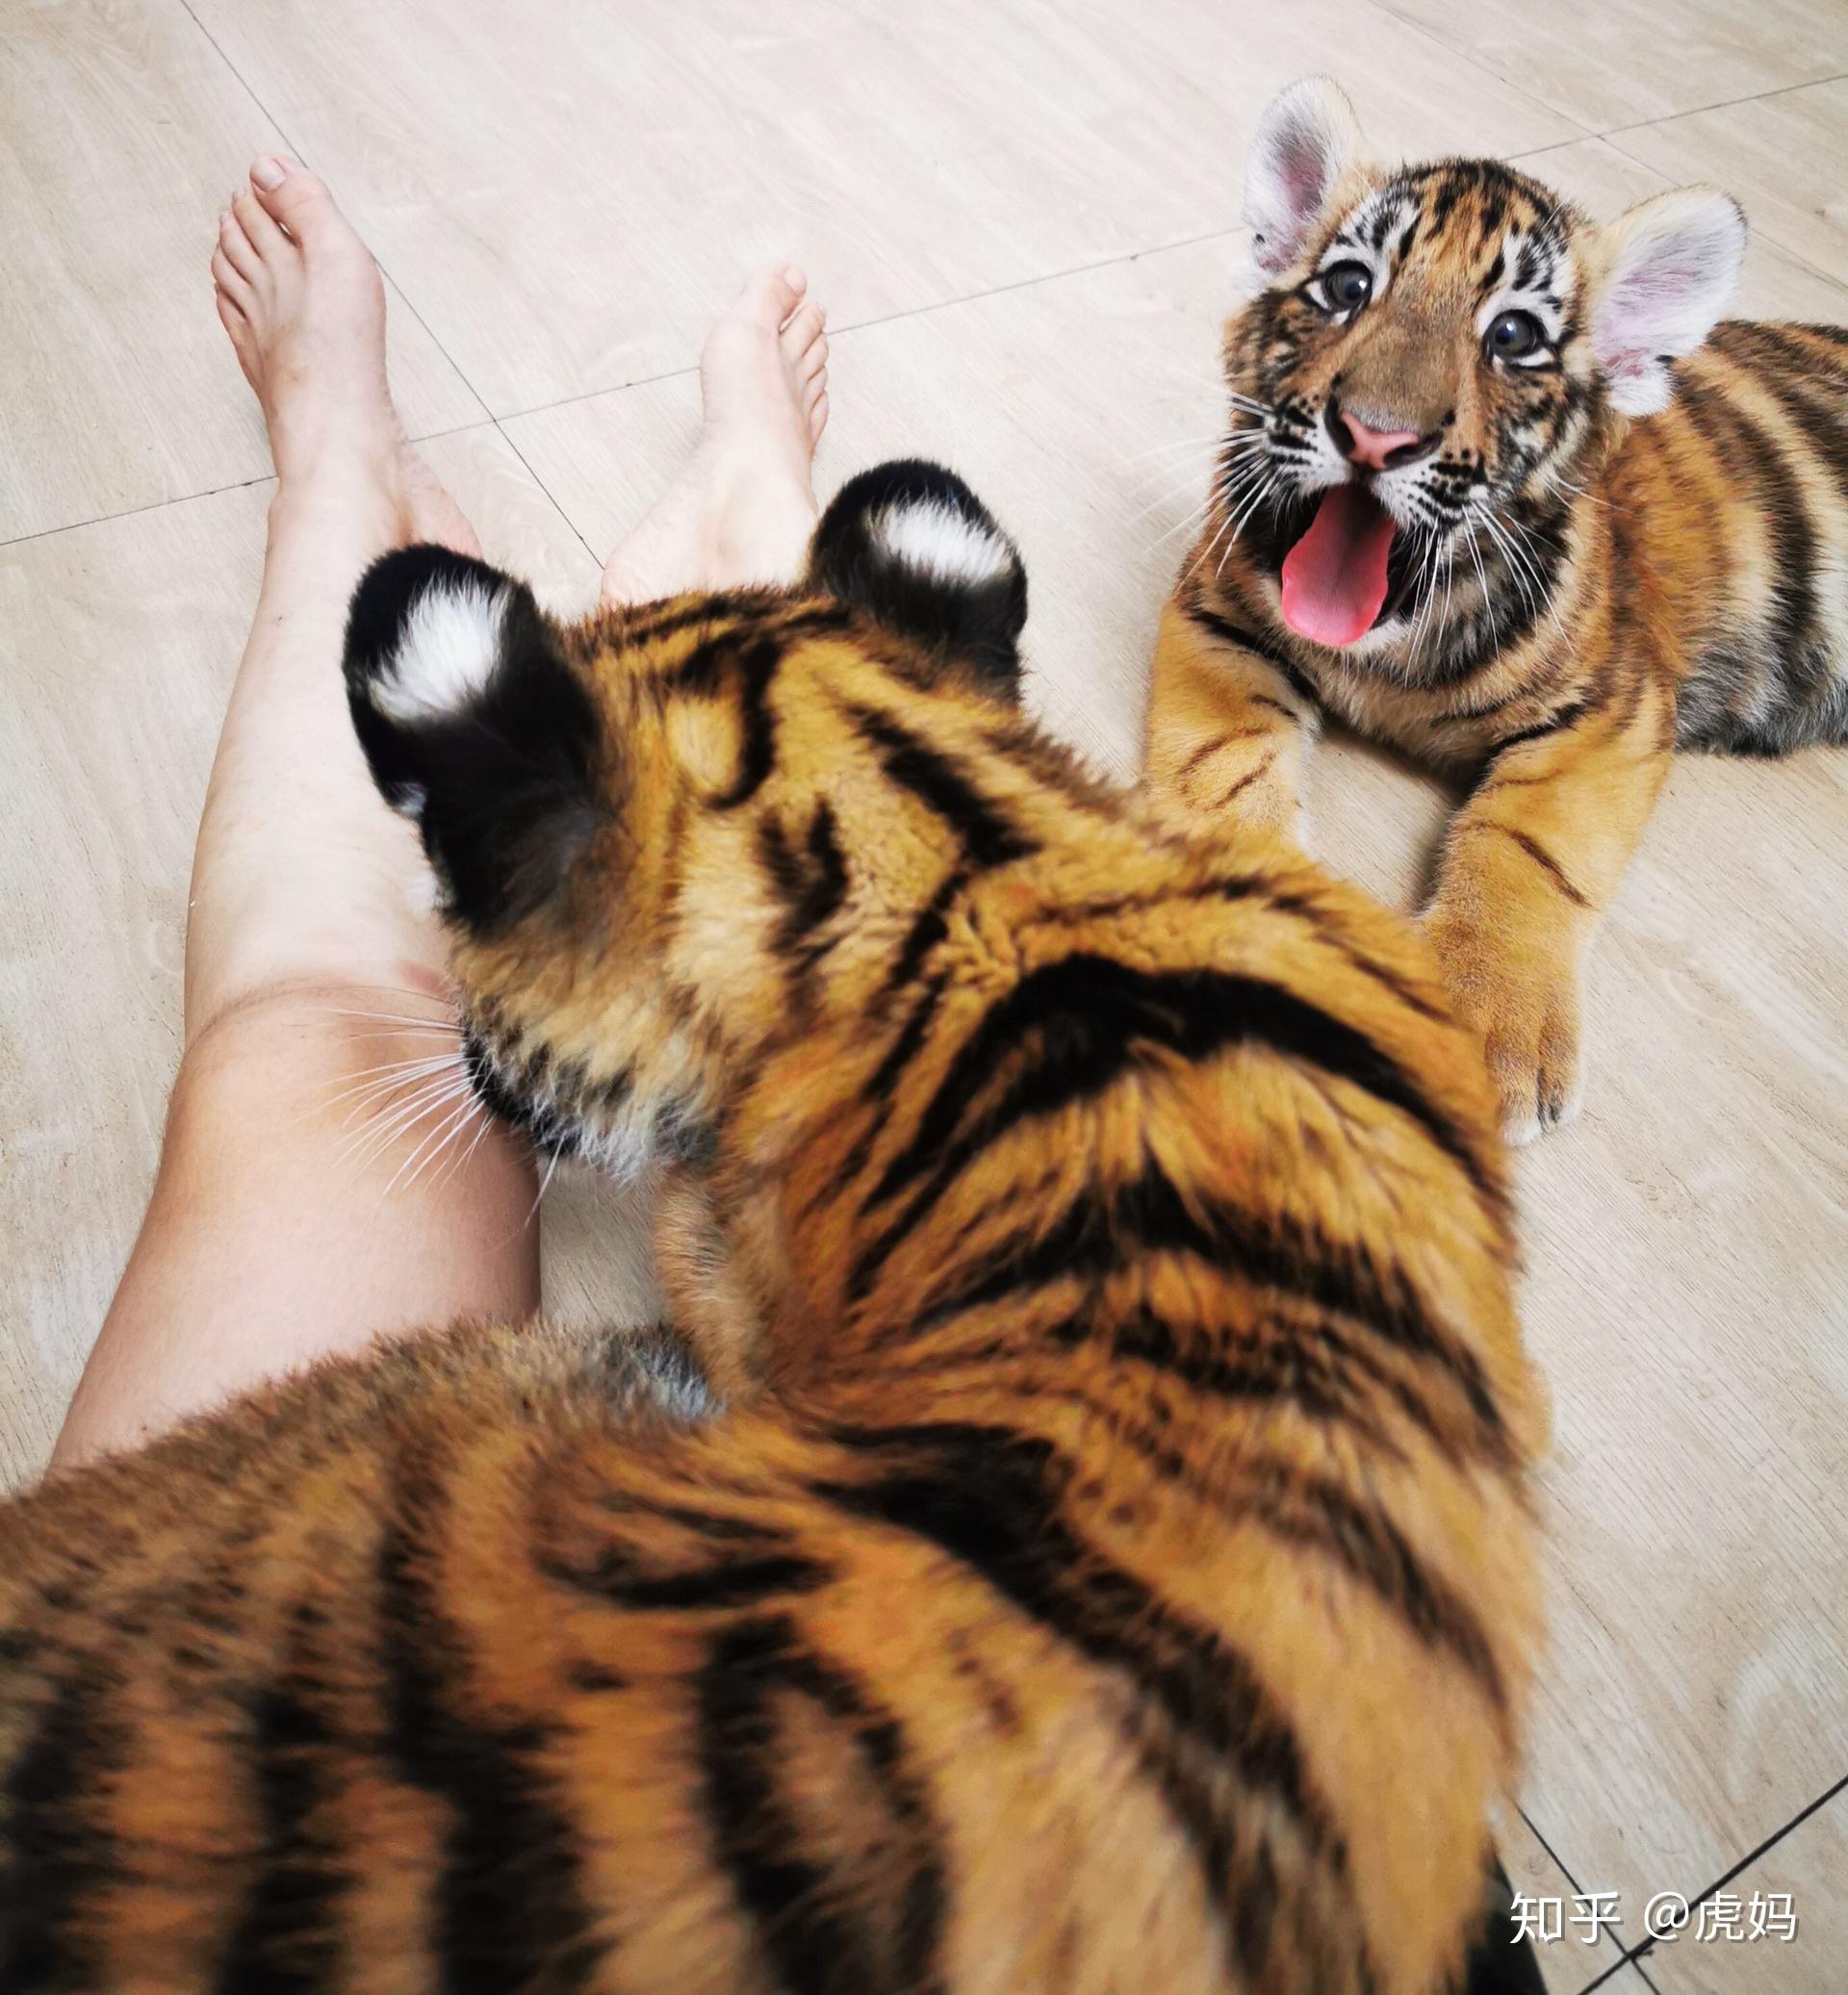 如果养一只小老虎每天抱着他一百个深蹲那么随着他长大是不是有一天我